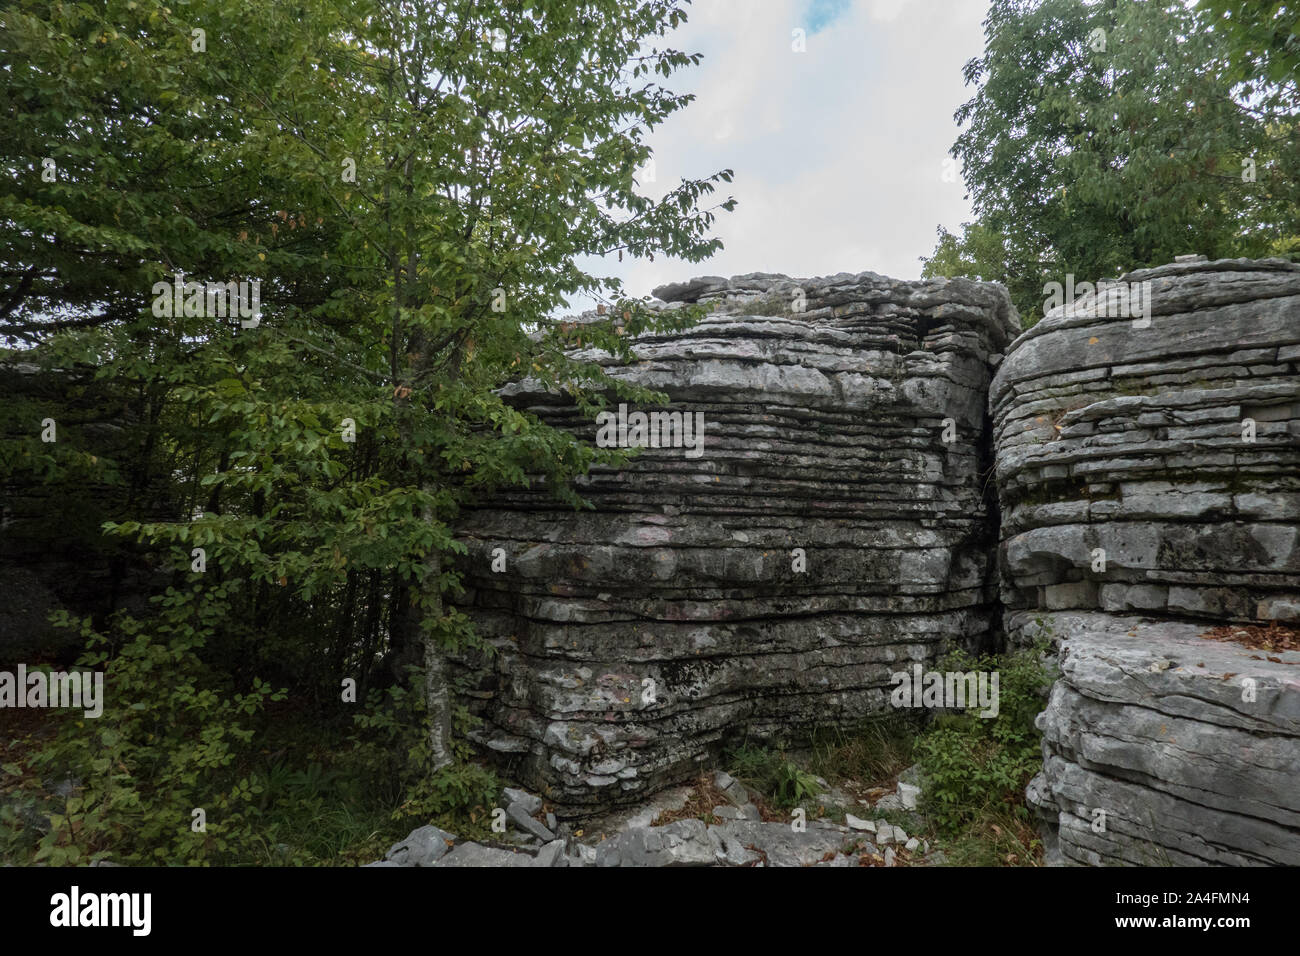 La forêt de pierre, Petrodasos, est un monument naturel avec des formations rocheuses avec superposition des couches horizontales de pierre. Zagori est une région montagneuse en Épire, dans le nord-ouest de la Grèce. Il a une superficie de quelque 1 000 kilomètres carrés et compte 46 villages connu comme Zagorochoria Zagori villages (ou Zagorochoria). Banque D'Images